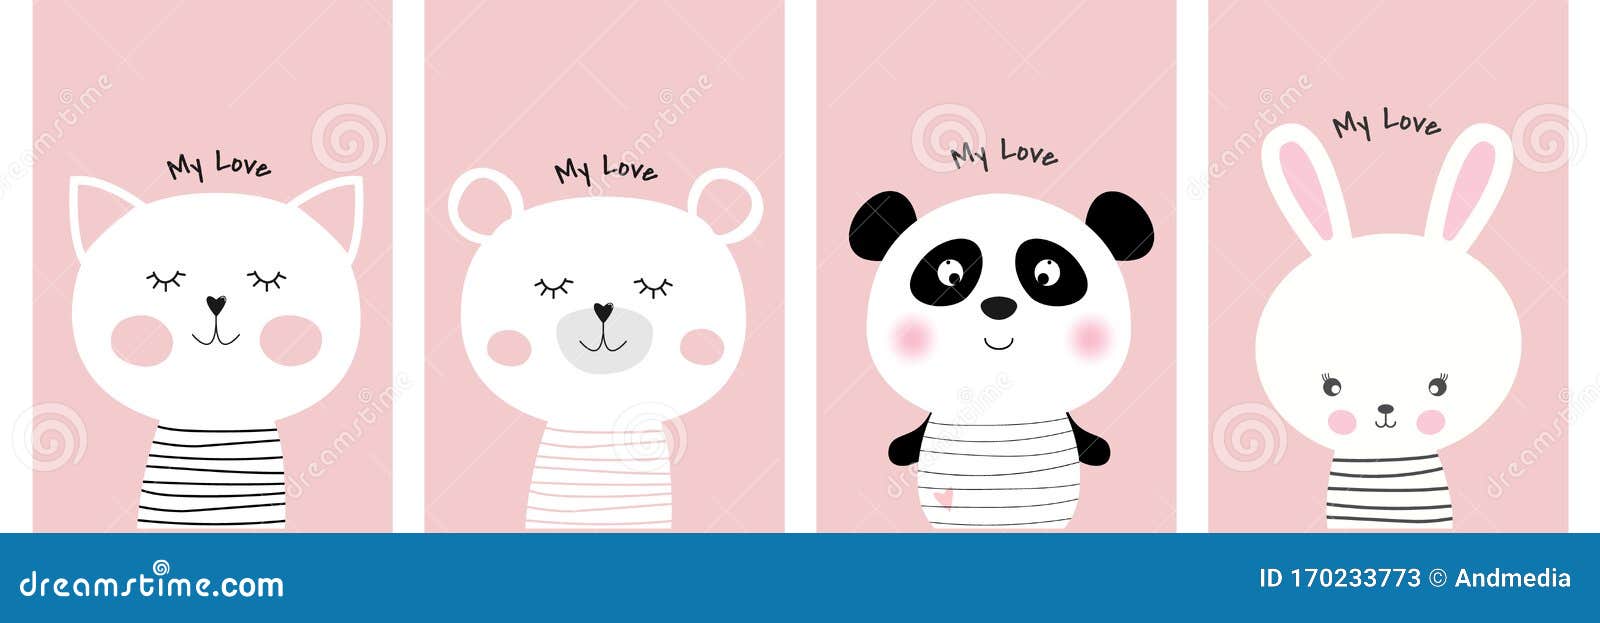 Carini E Divertenti Animaletti Animati Di Cartoni Animati Gatto Orso Panda E Coniglio Illustrazione Vettoriale Illustrazione Di Arte Lepri